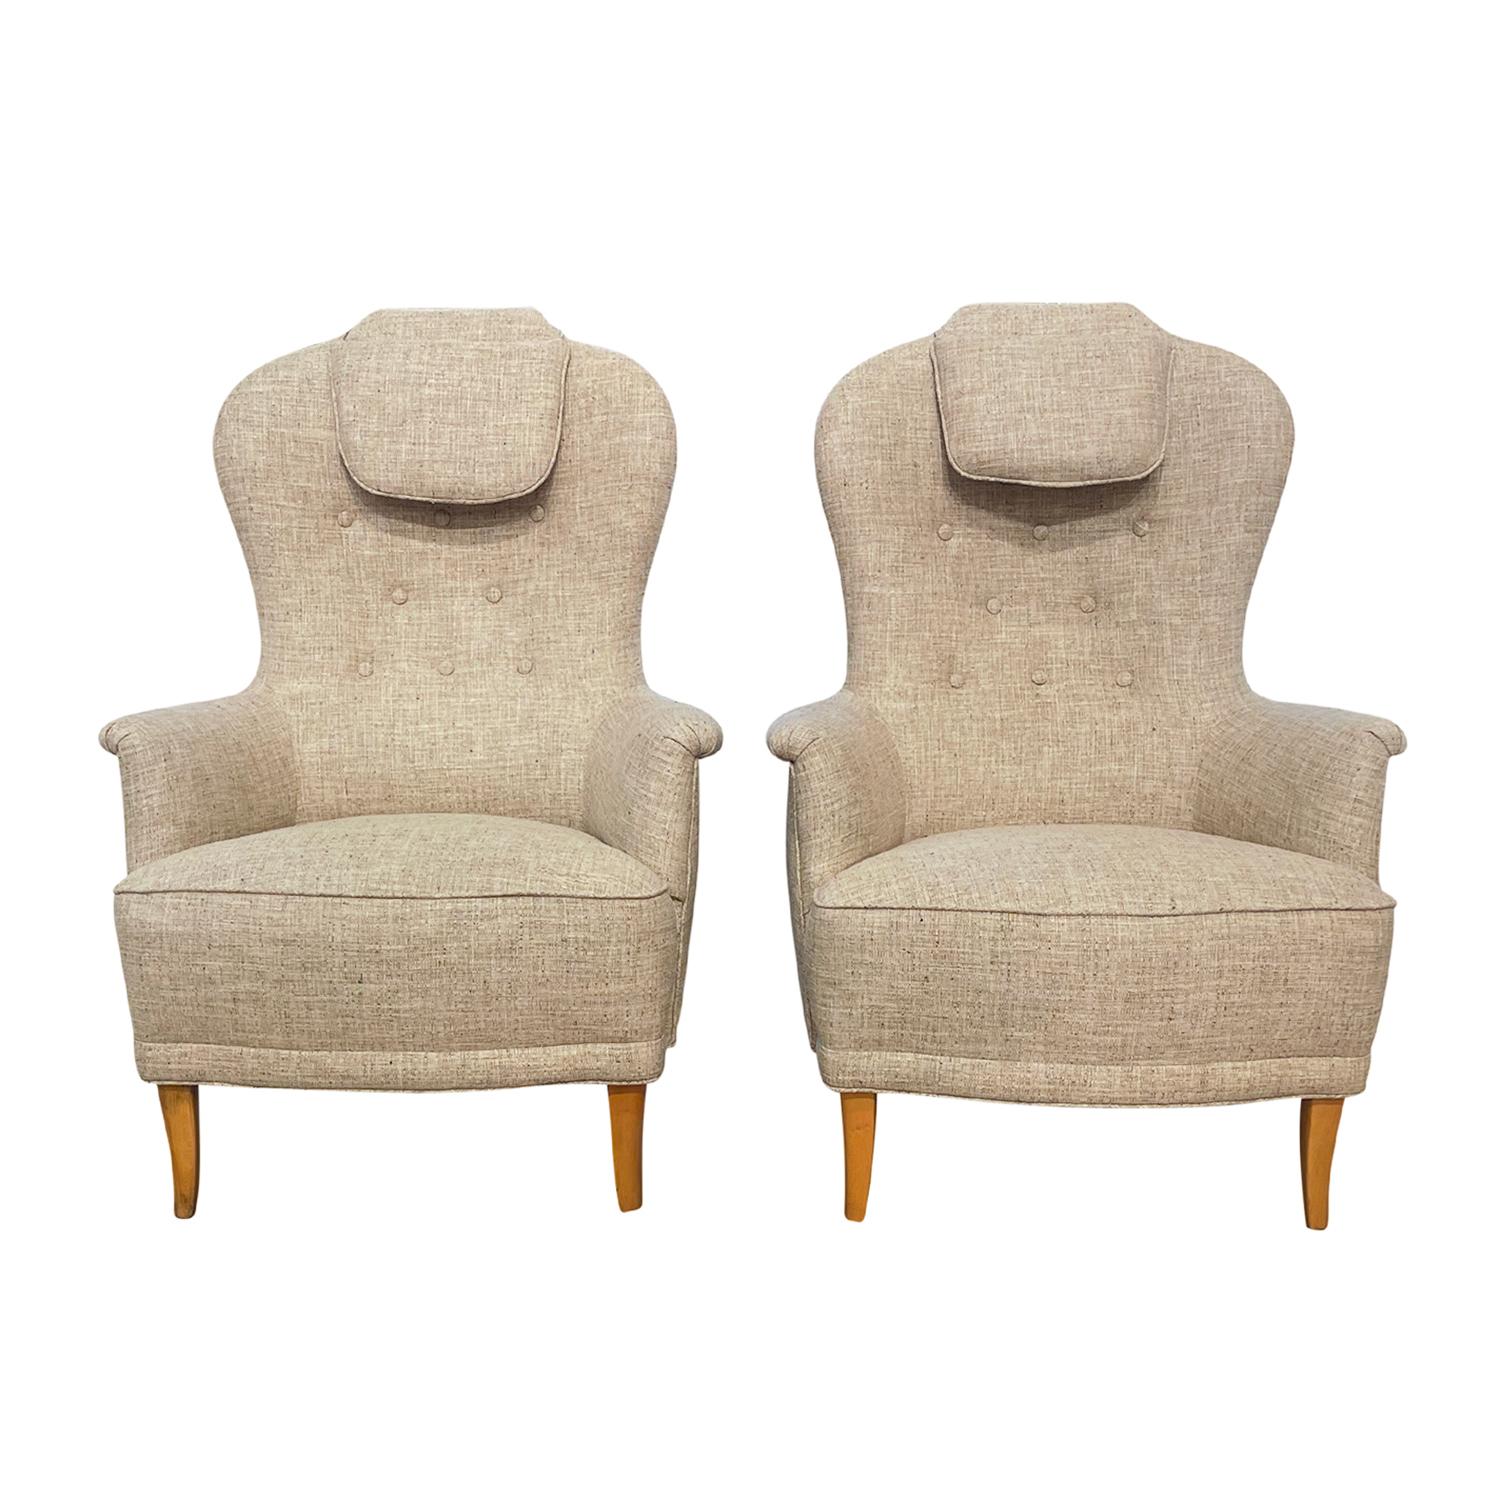 Ein schwedisches Oma-Sesselpaar aus der Jahrhundertmitte, entworfen von Carl Malmsten und hergestellt von O.H. Sjögren, in gutem Zustand. Die Rückenlehnen der skandinavischen Loungesessel sind leicht geneigt, mit einer knopfgetufteten Rückenlehne